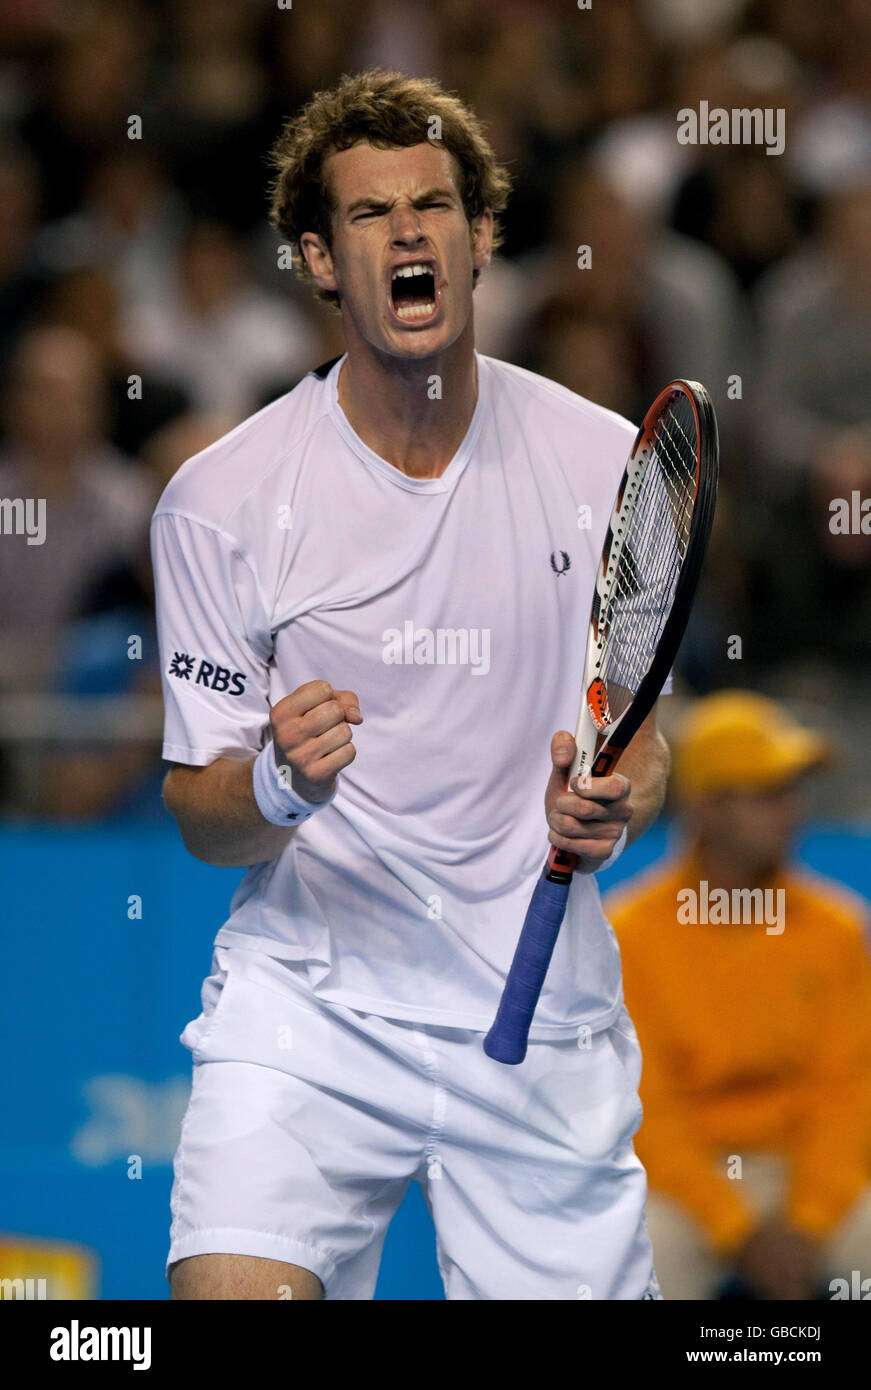 Der britische Andy Murray feiert den Sieg des österreichischen Jurgen Melzer bei den Australian Open 2009 im Melbourne Park, Melbourne, Australien. Stockfoto